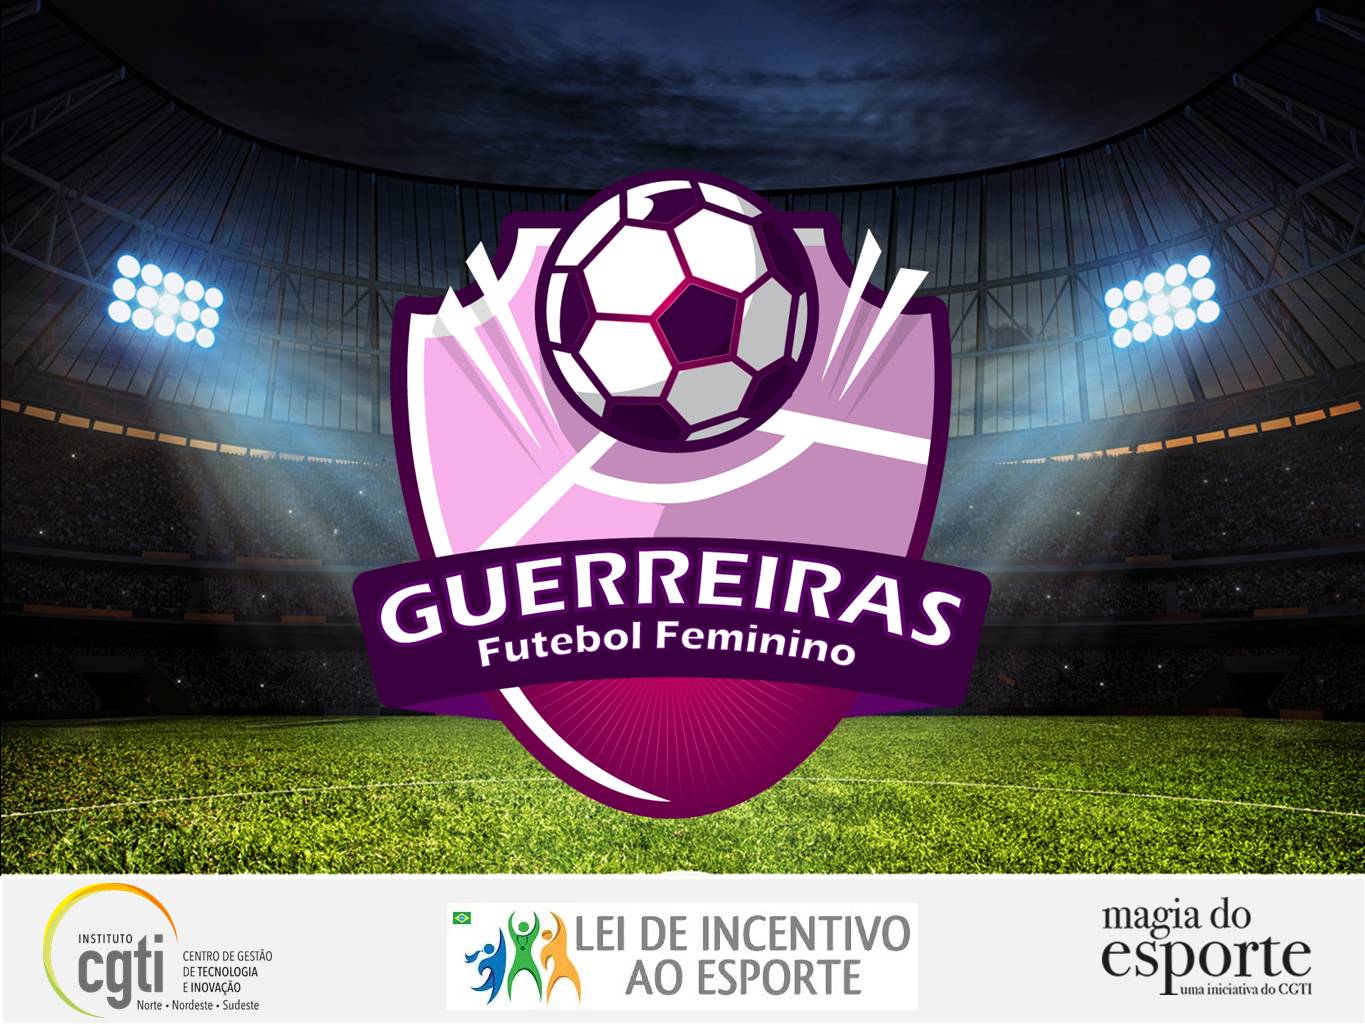 Projeto Guerreiras Futebol Feminino - Magia do Esporte